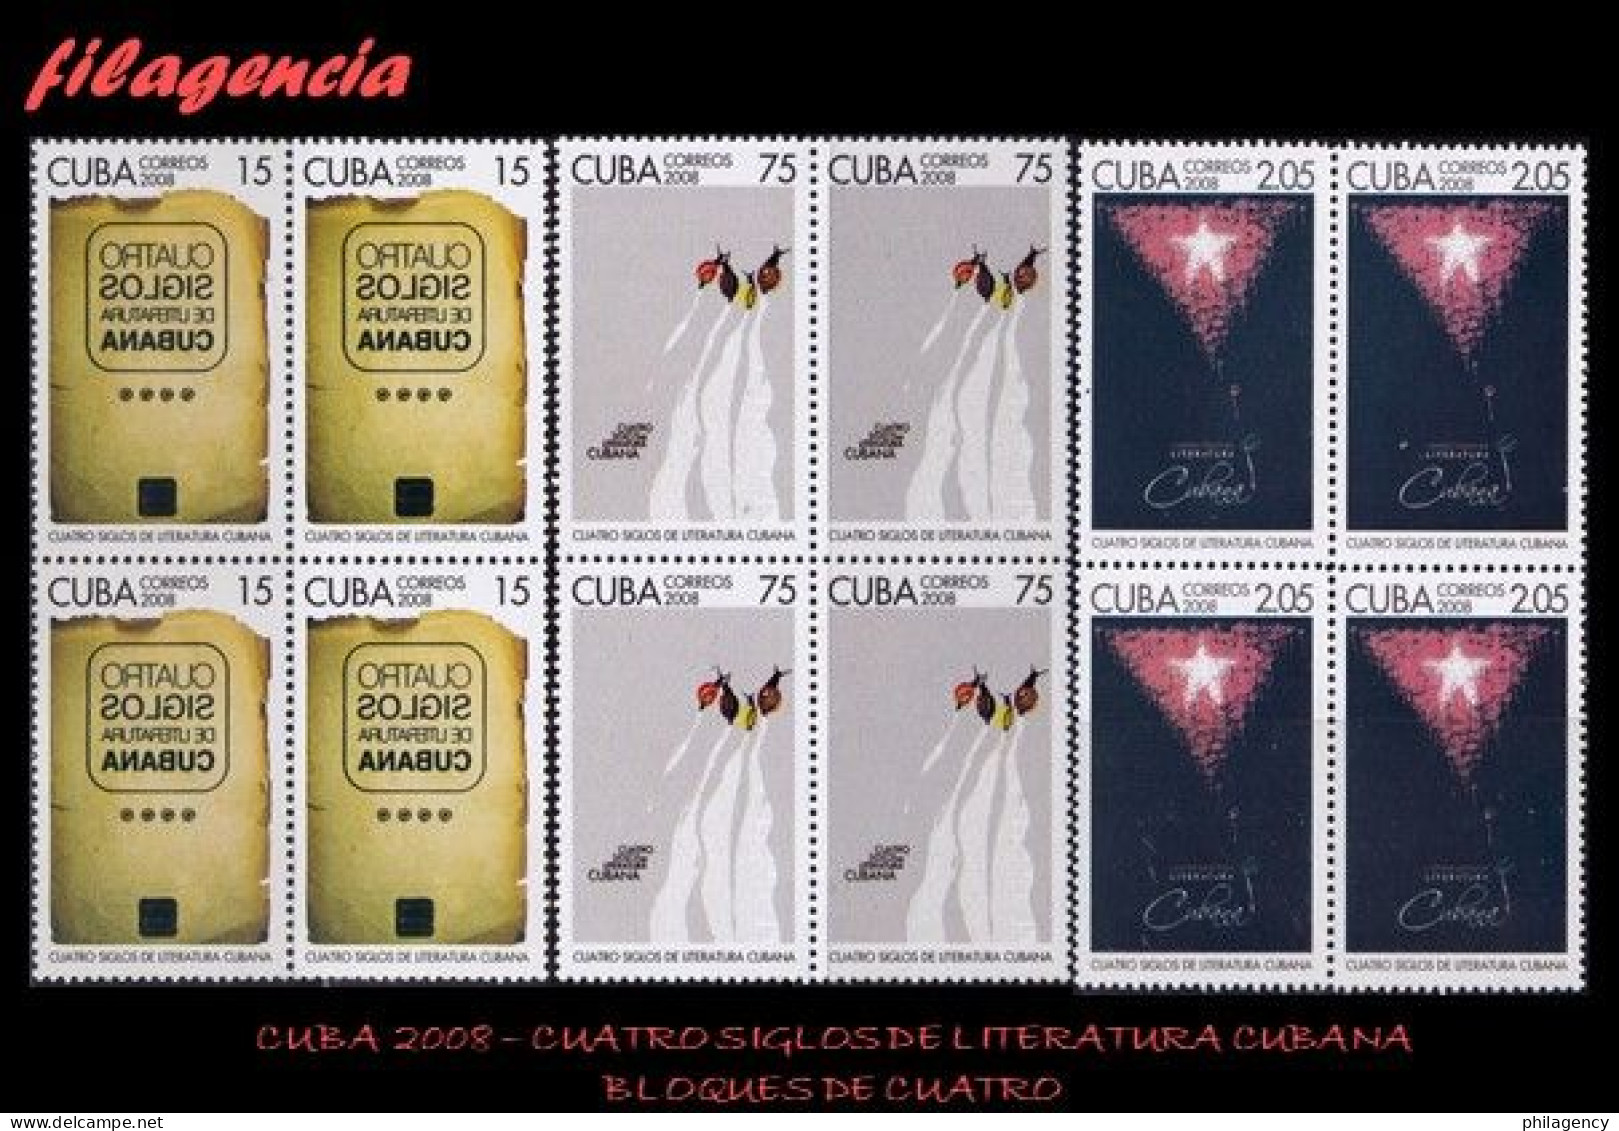 CUBA. BLOQUES DE CUATRO. 2008-28 CUATRO SIGLOS DE LITERATURA CUBANA - Neufs